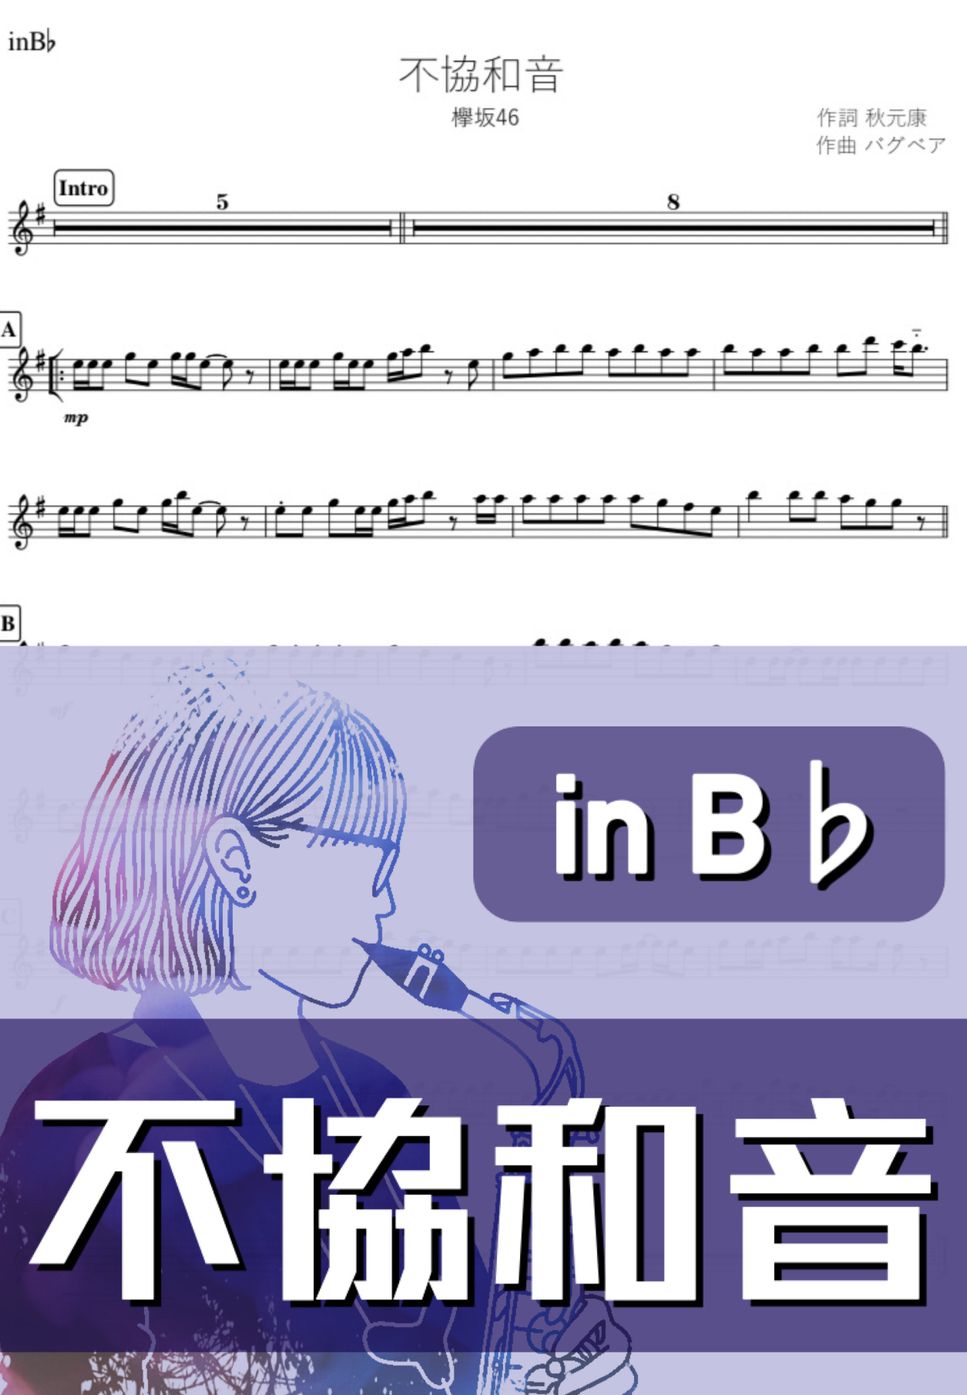 欅坂46 - 不協和音 (B♭) by kanamusic